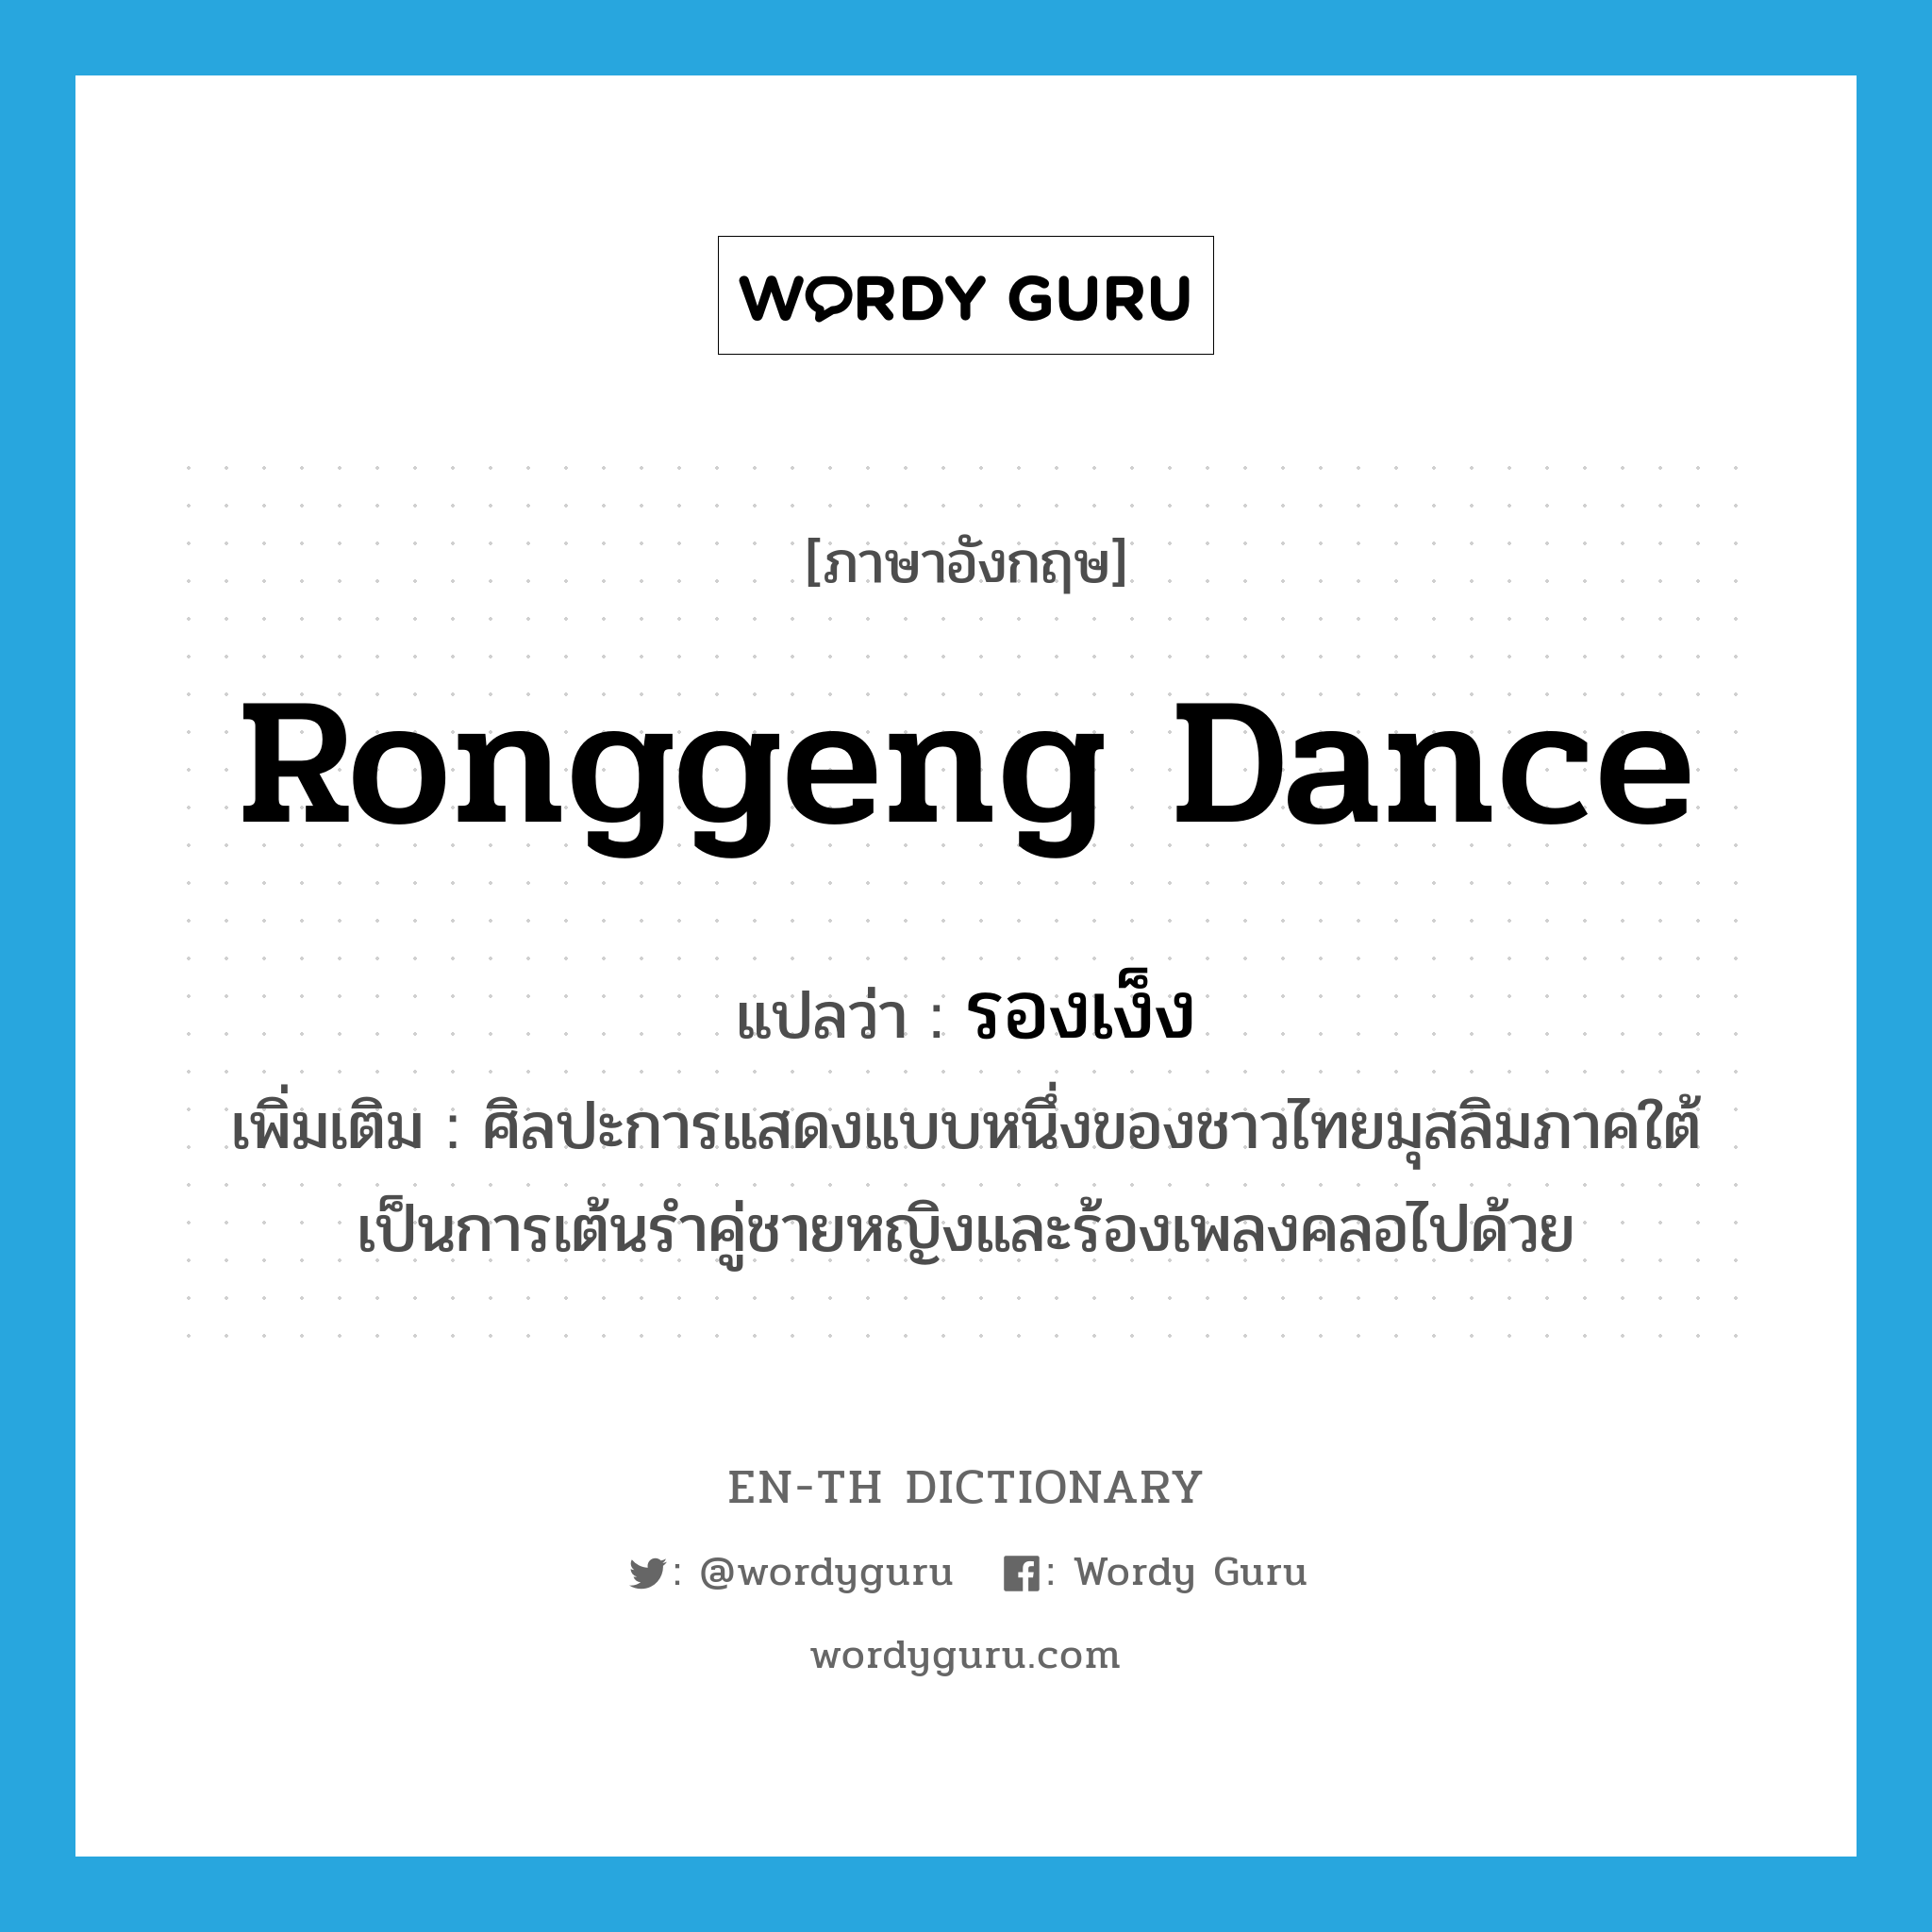 รองเง็ง ภาษาอังกฤษ?, คำศัพท์ภาษาอังกฤษ รองเง็ง แปลว่า Ronggeng dance ประเภท N เพิ่มเติม ศิลปะการแสดงแบบหนึ่งของชาวไทยมุสลิมภาคใต้ เป็นการเต้นรำคู่ชายหญิงและร้องเพลงคลอไปด้วย หมวด N